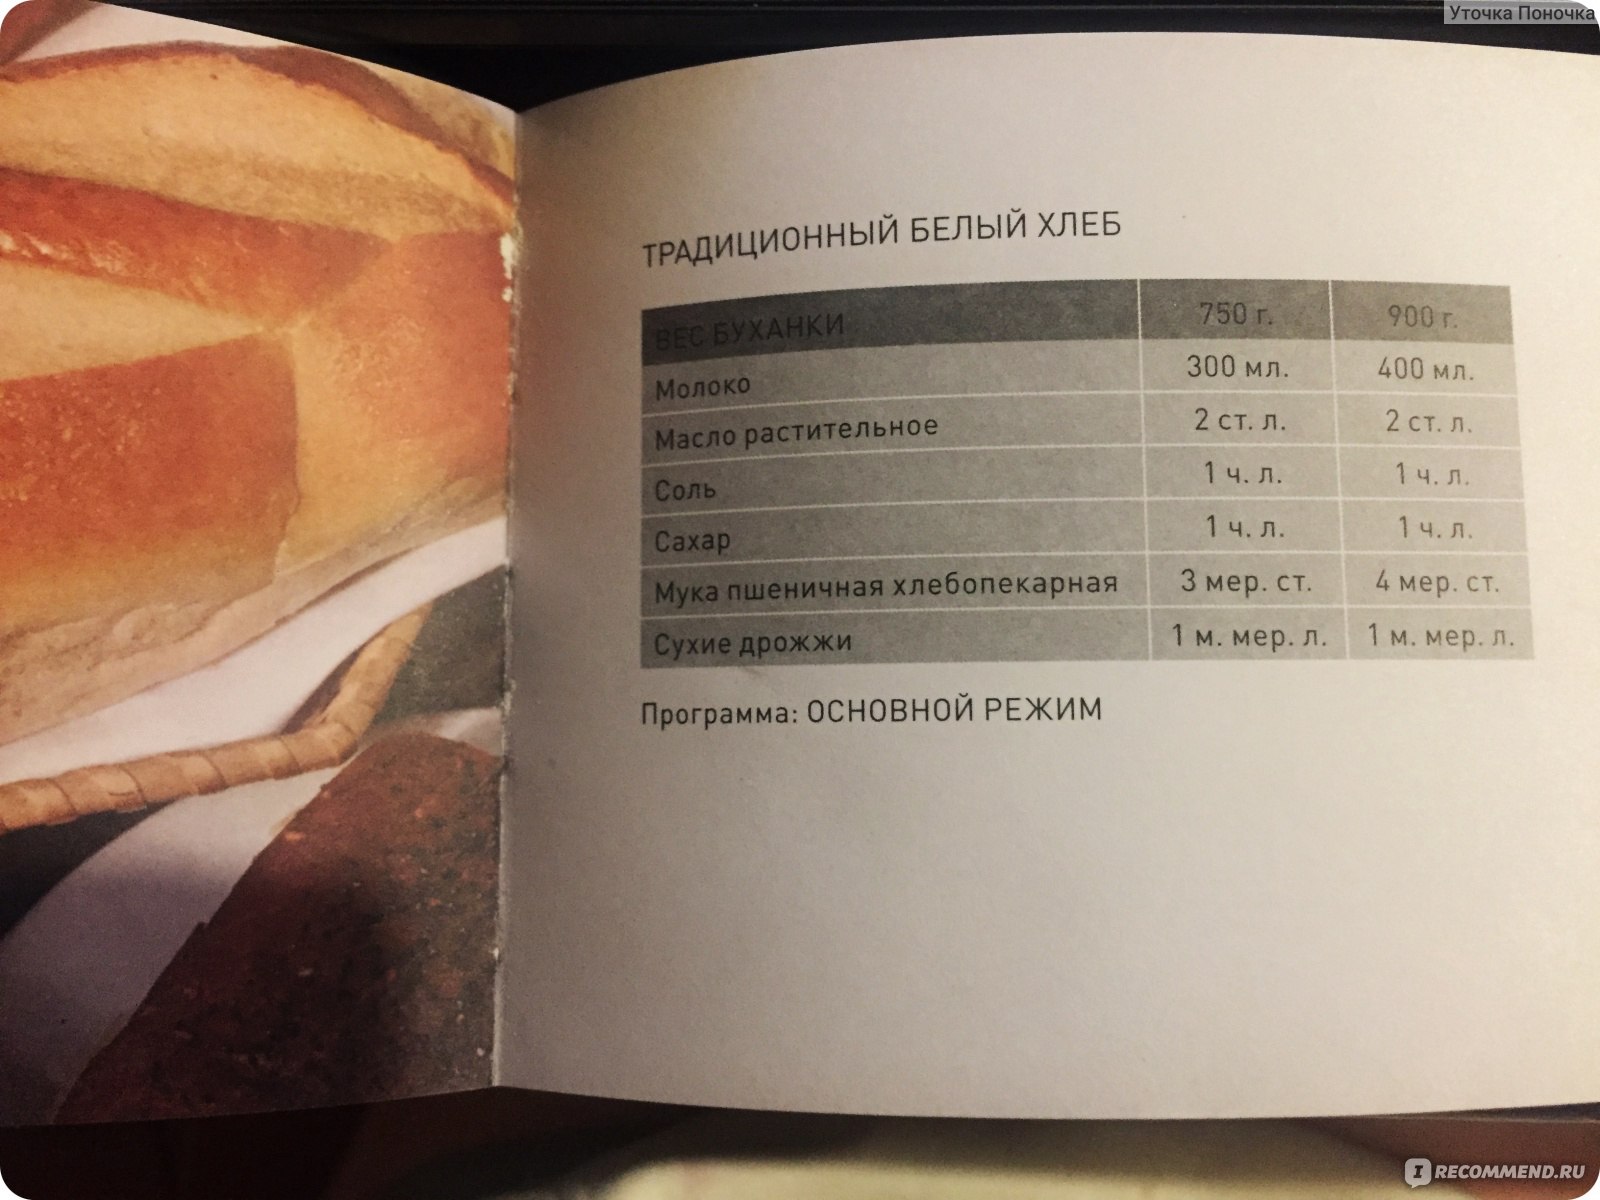 Книга рецептов теста. Рецепты для хлебопечки Борк х500. Хлебопечка Bork x500 рецепты. Хлебопечь Bork x500 книга рецептов. Борк 500 хлебопечка рецепты.